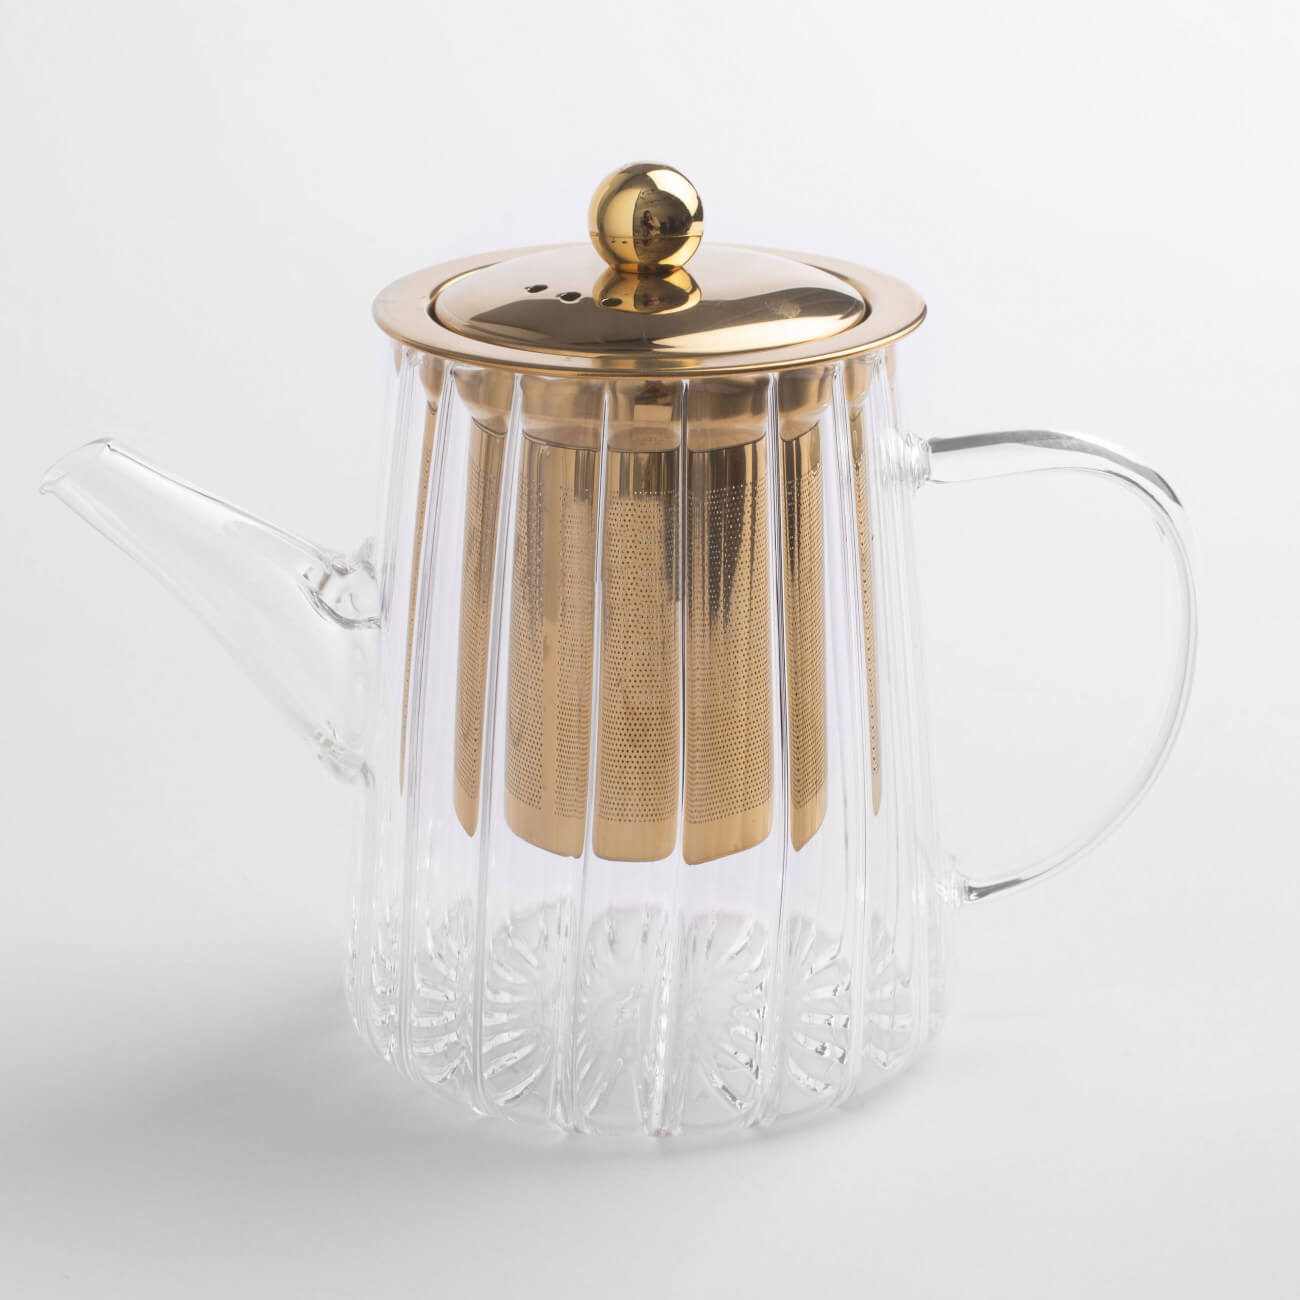 Чайник заварочный, 600 мл, стекло Б/сталь, золотистый, Camellia gold чайник заварочный оранж700 мл